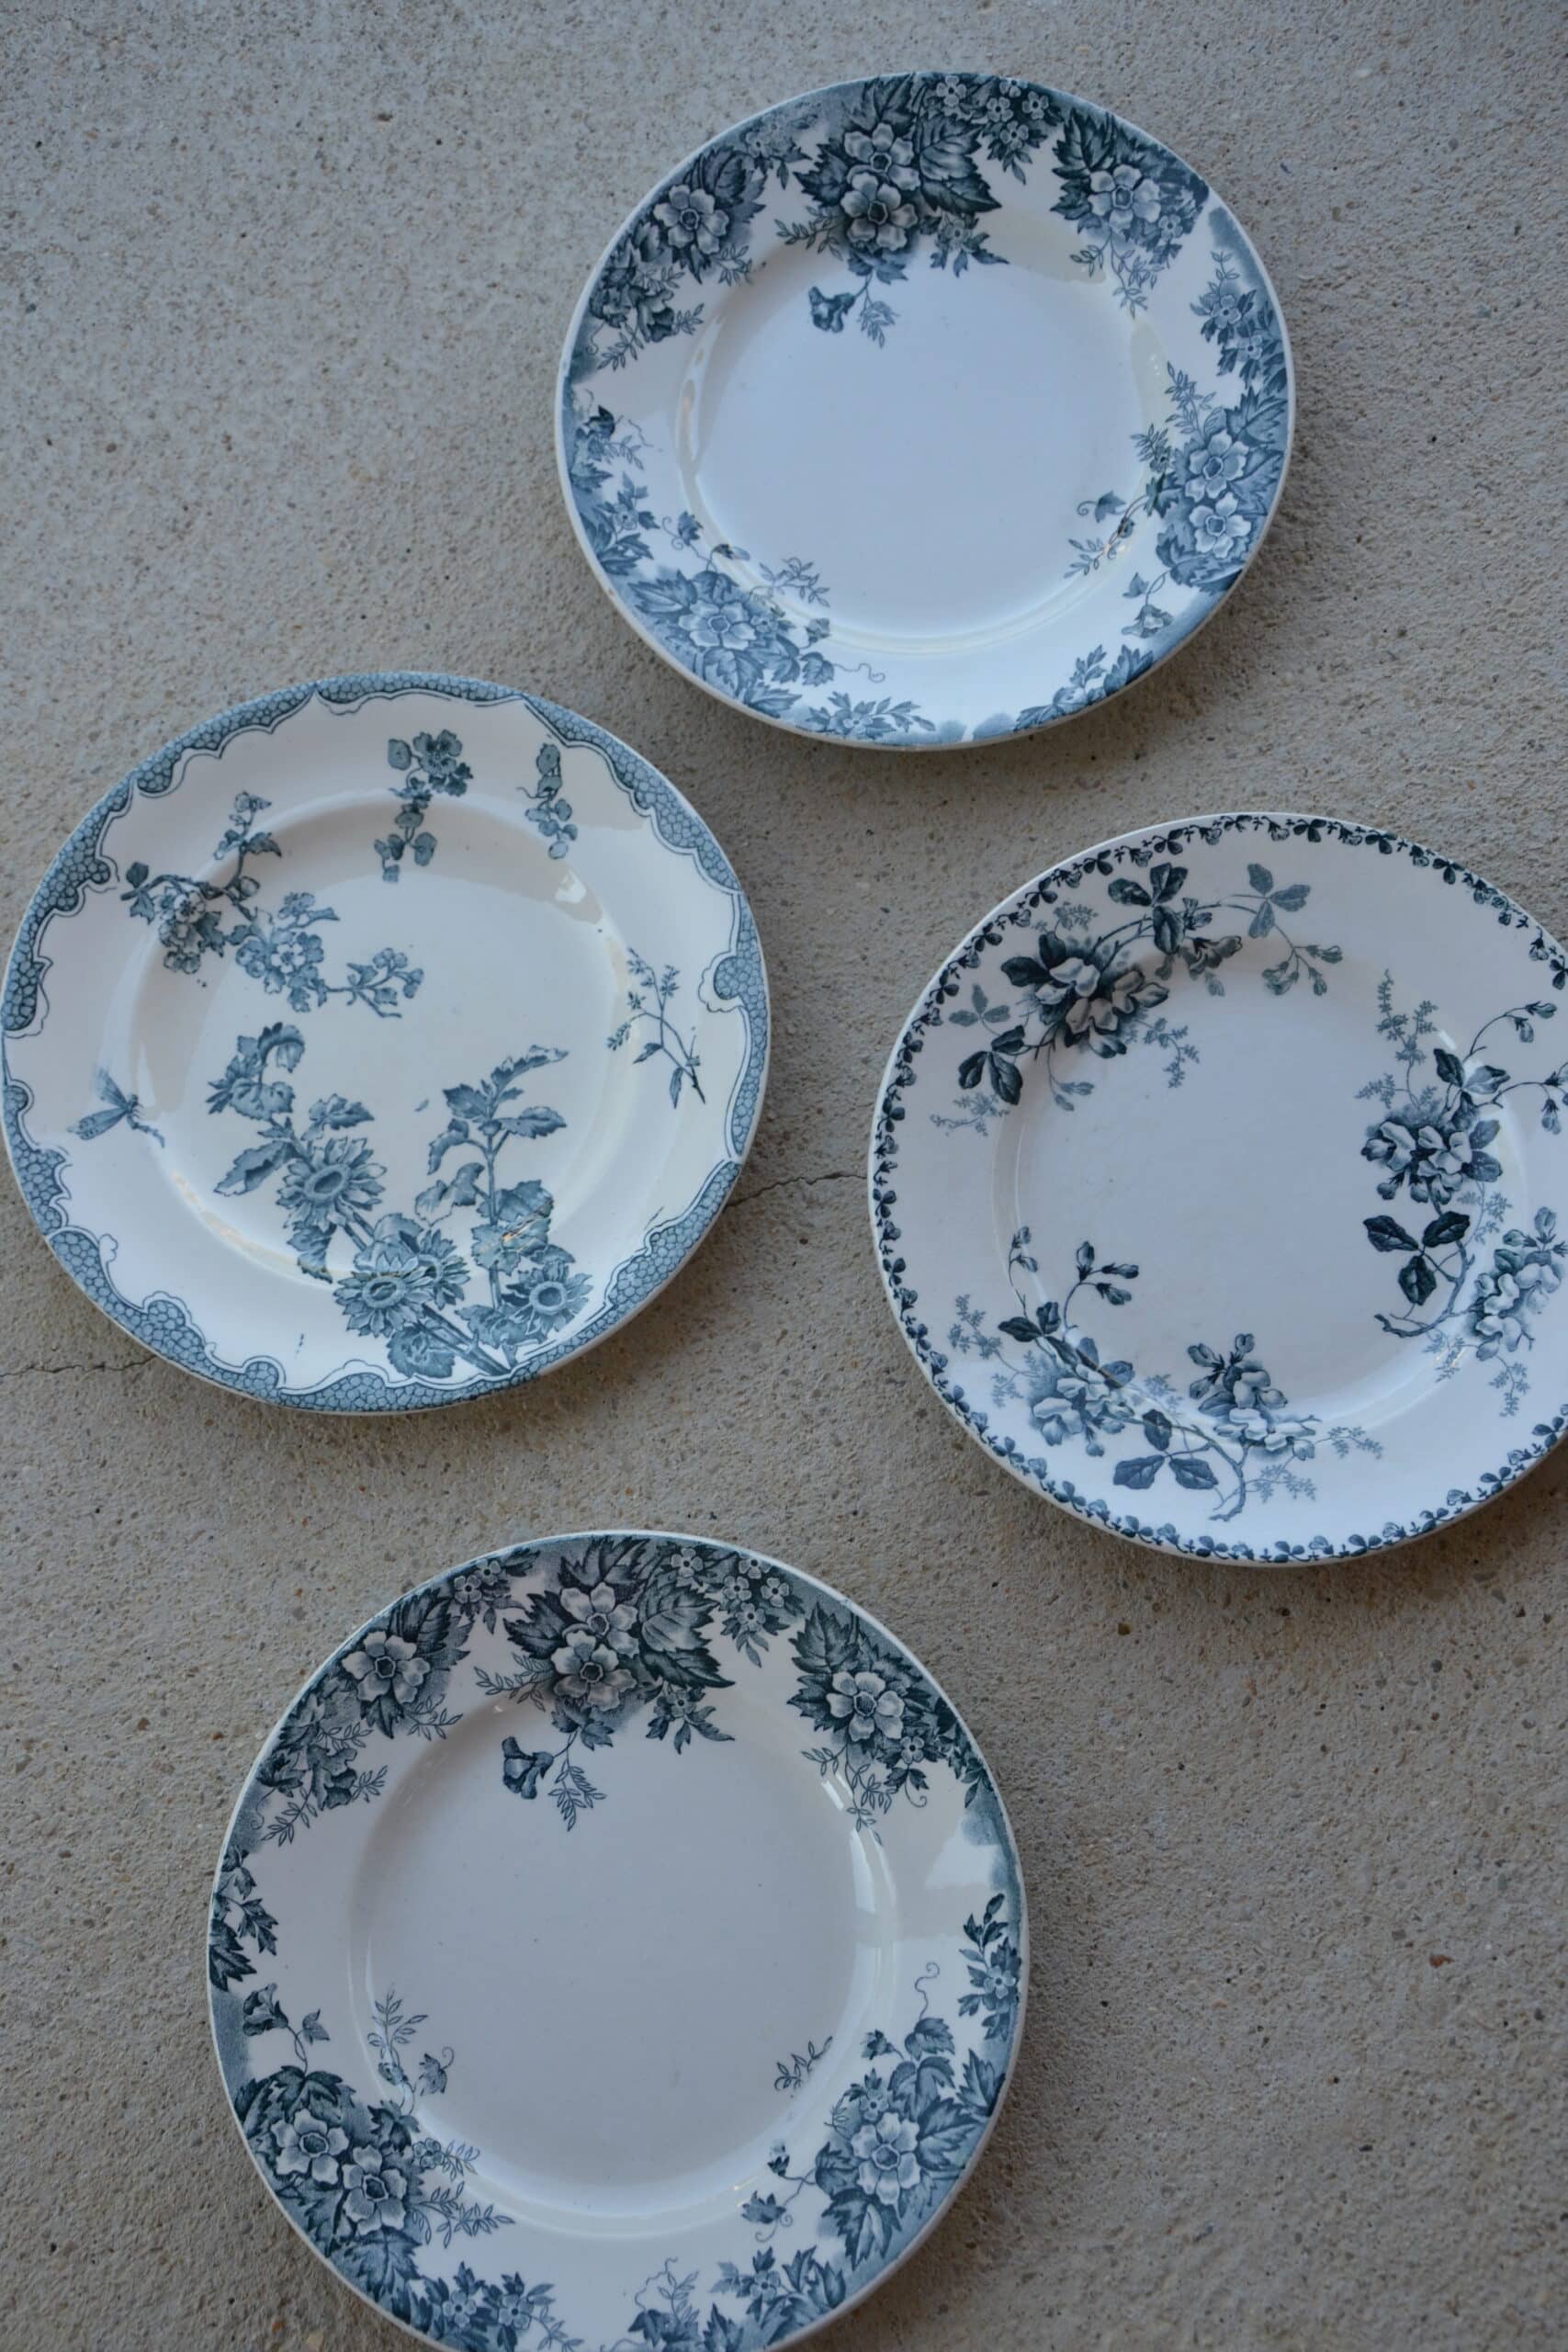 6 assiettes vintage dépareillées porcelaine bleue et blanche - Cottage core  - Lot F